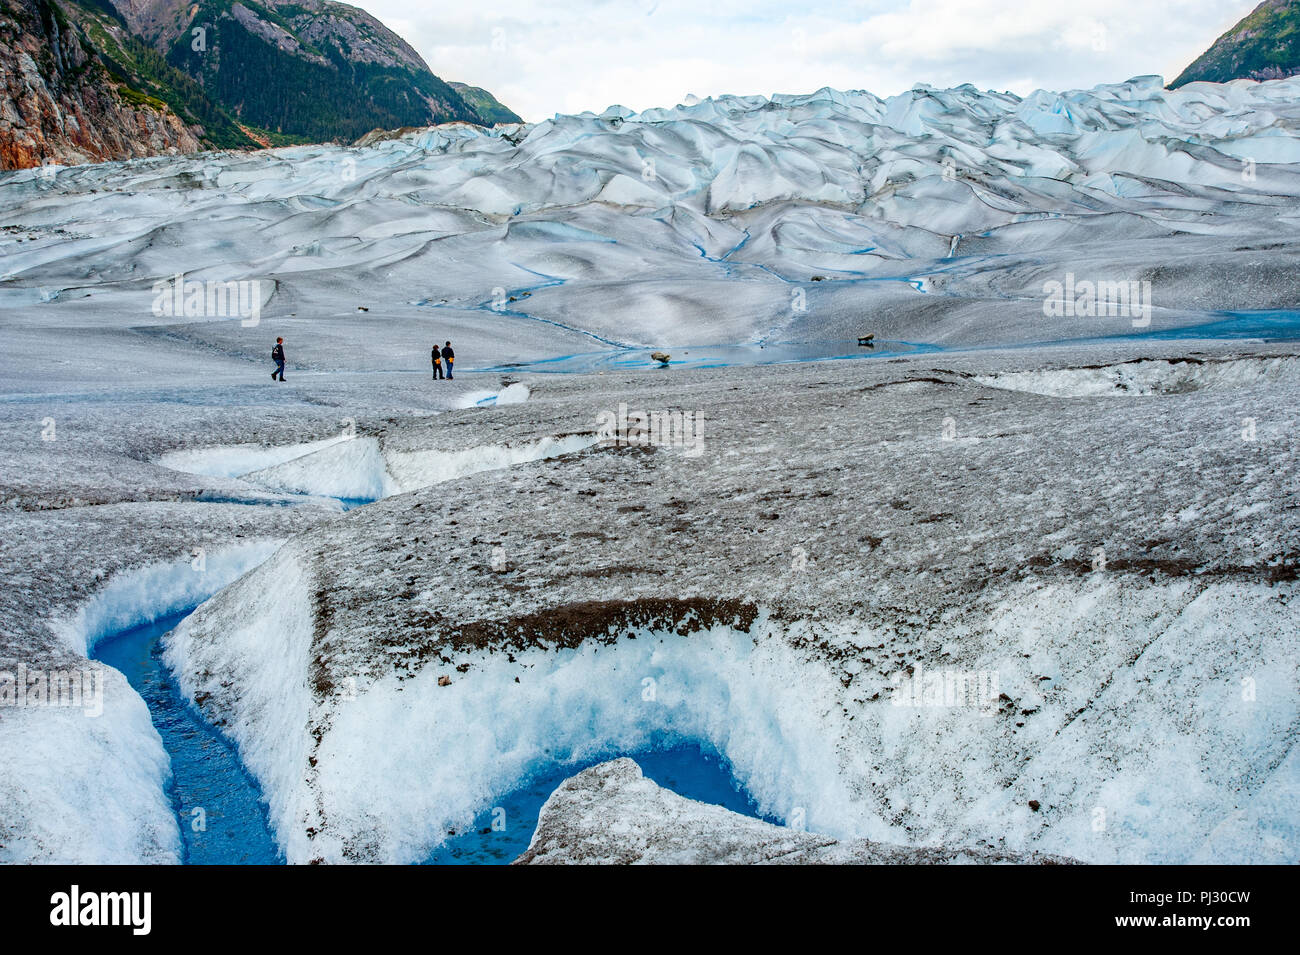 Gletscher Helikopter-tour - Juneau Alaska - touristische Wanderer auf einem Gletscher Wandern Gilkey Gletscher an der Juneau Icefield - Blau eiszeitliche Schmelzwasser Stockfoto